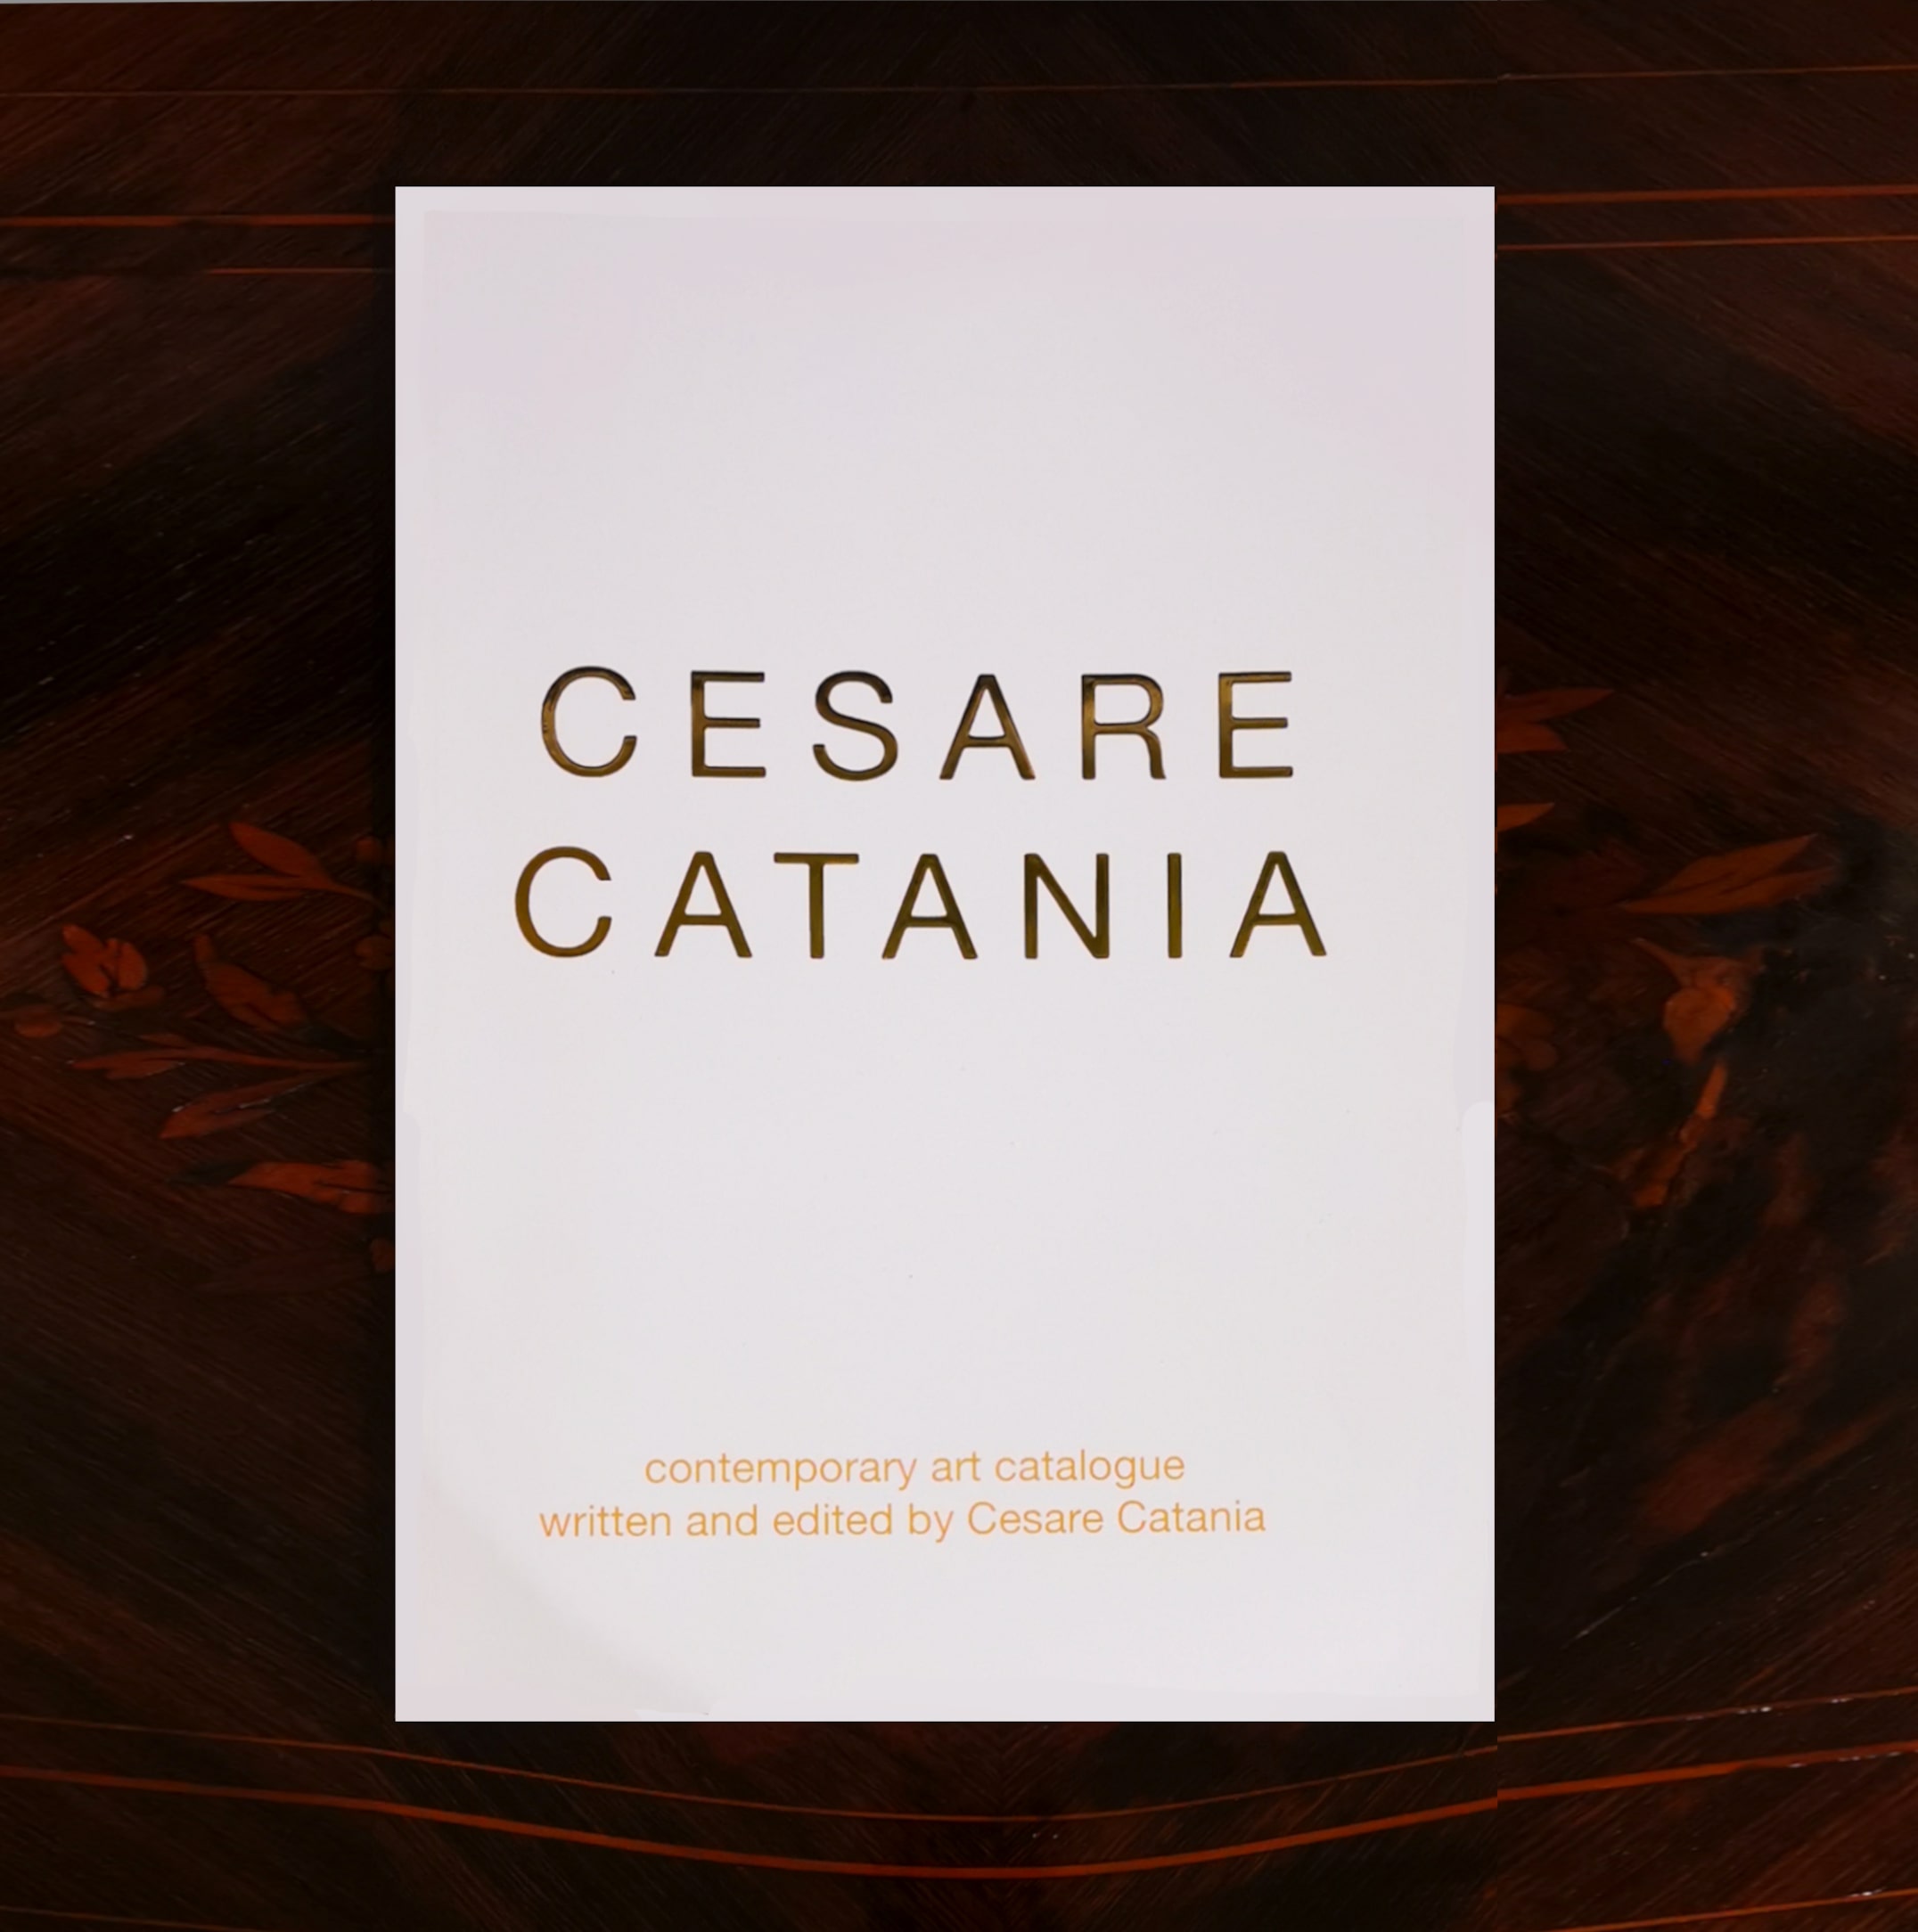 Livre d’art contemporain contenant les œuvres de Cesare Catania et signé par l’auteur